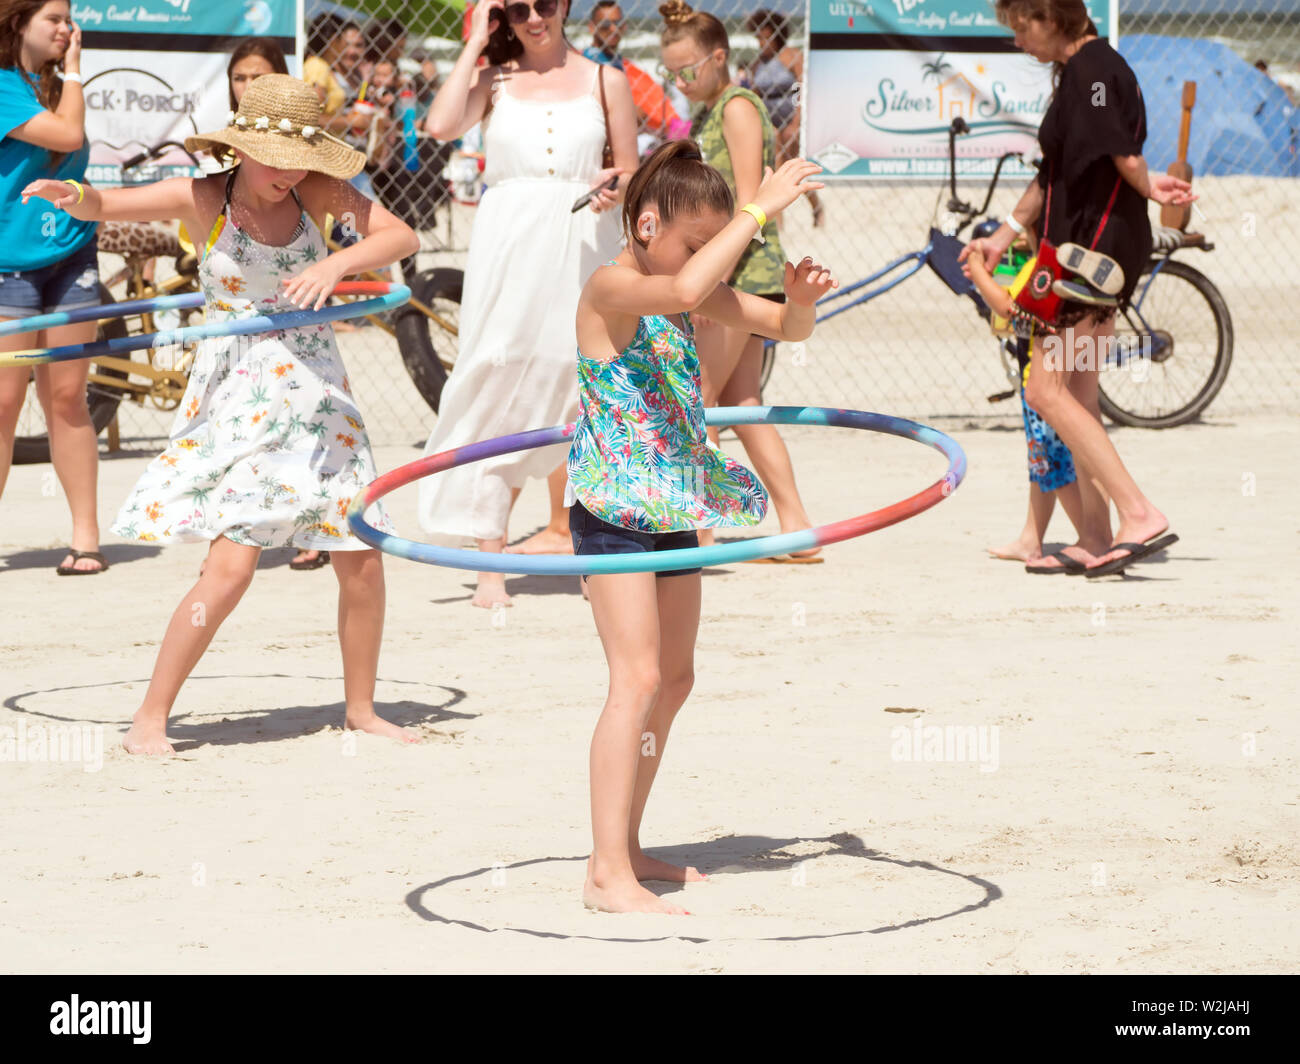 La pratique des jeunes filles twirling Hula Hoops au Texas 2019 Sandfest à Port Aransas, Texas USA. Banque D'Images